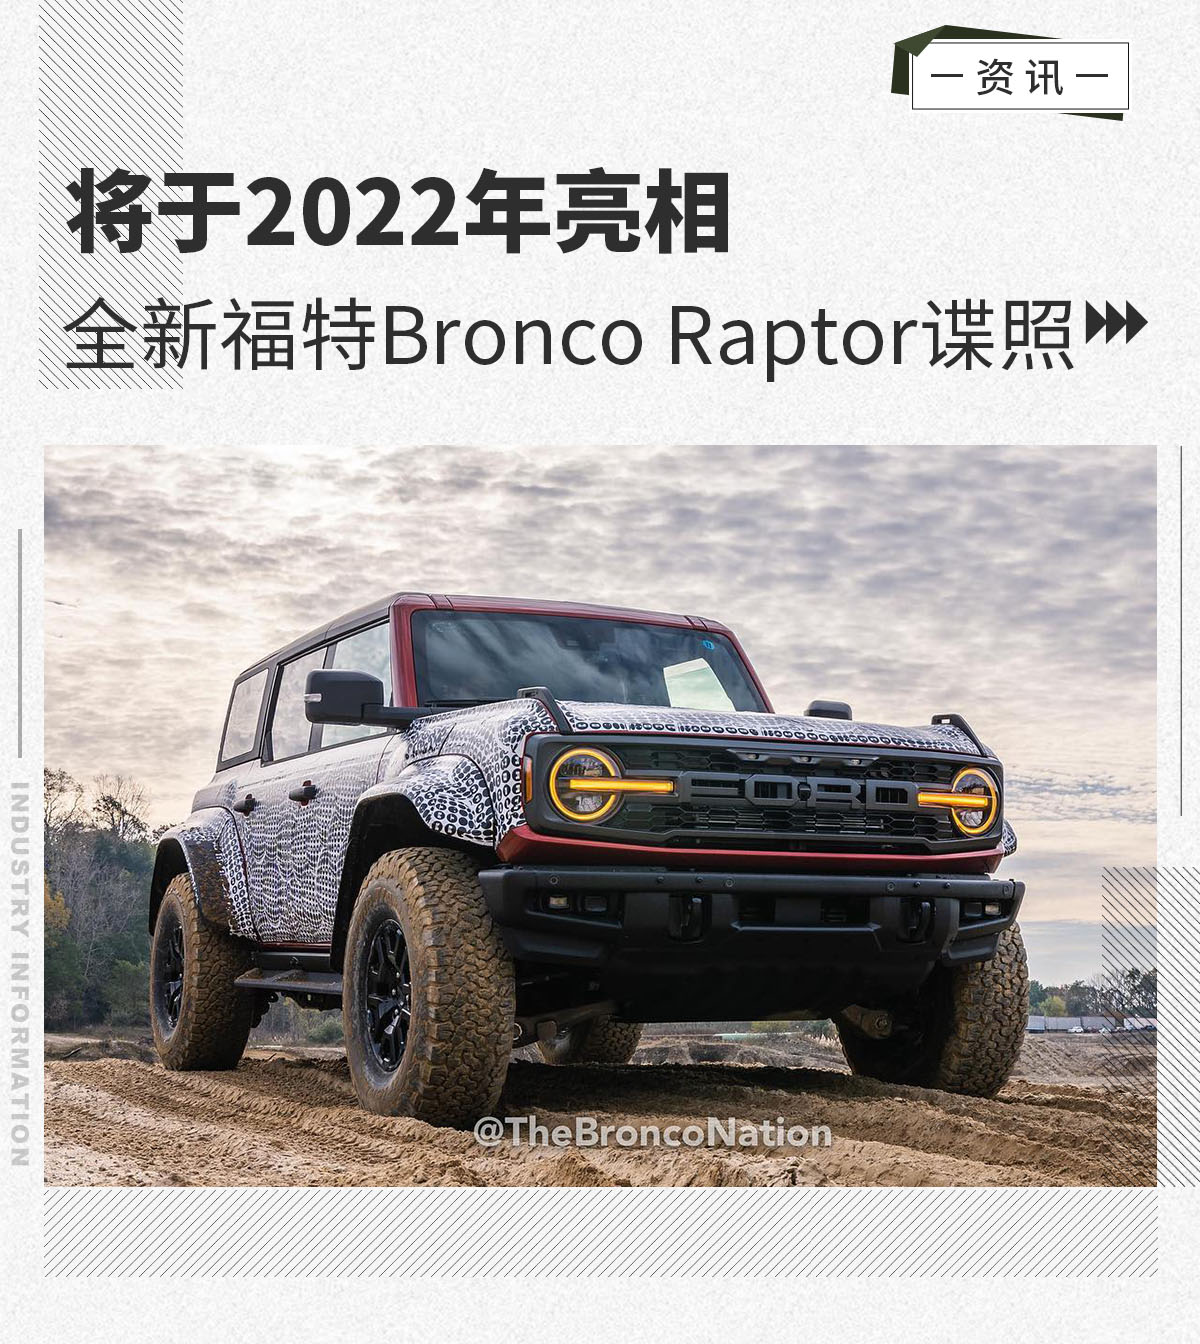 全新福特Bronco Raptor谍照 将于2022年亮相